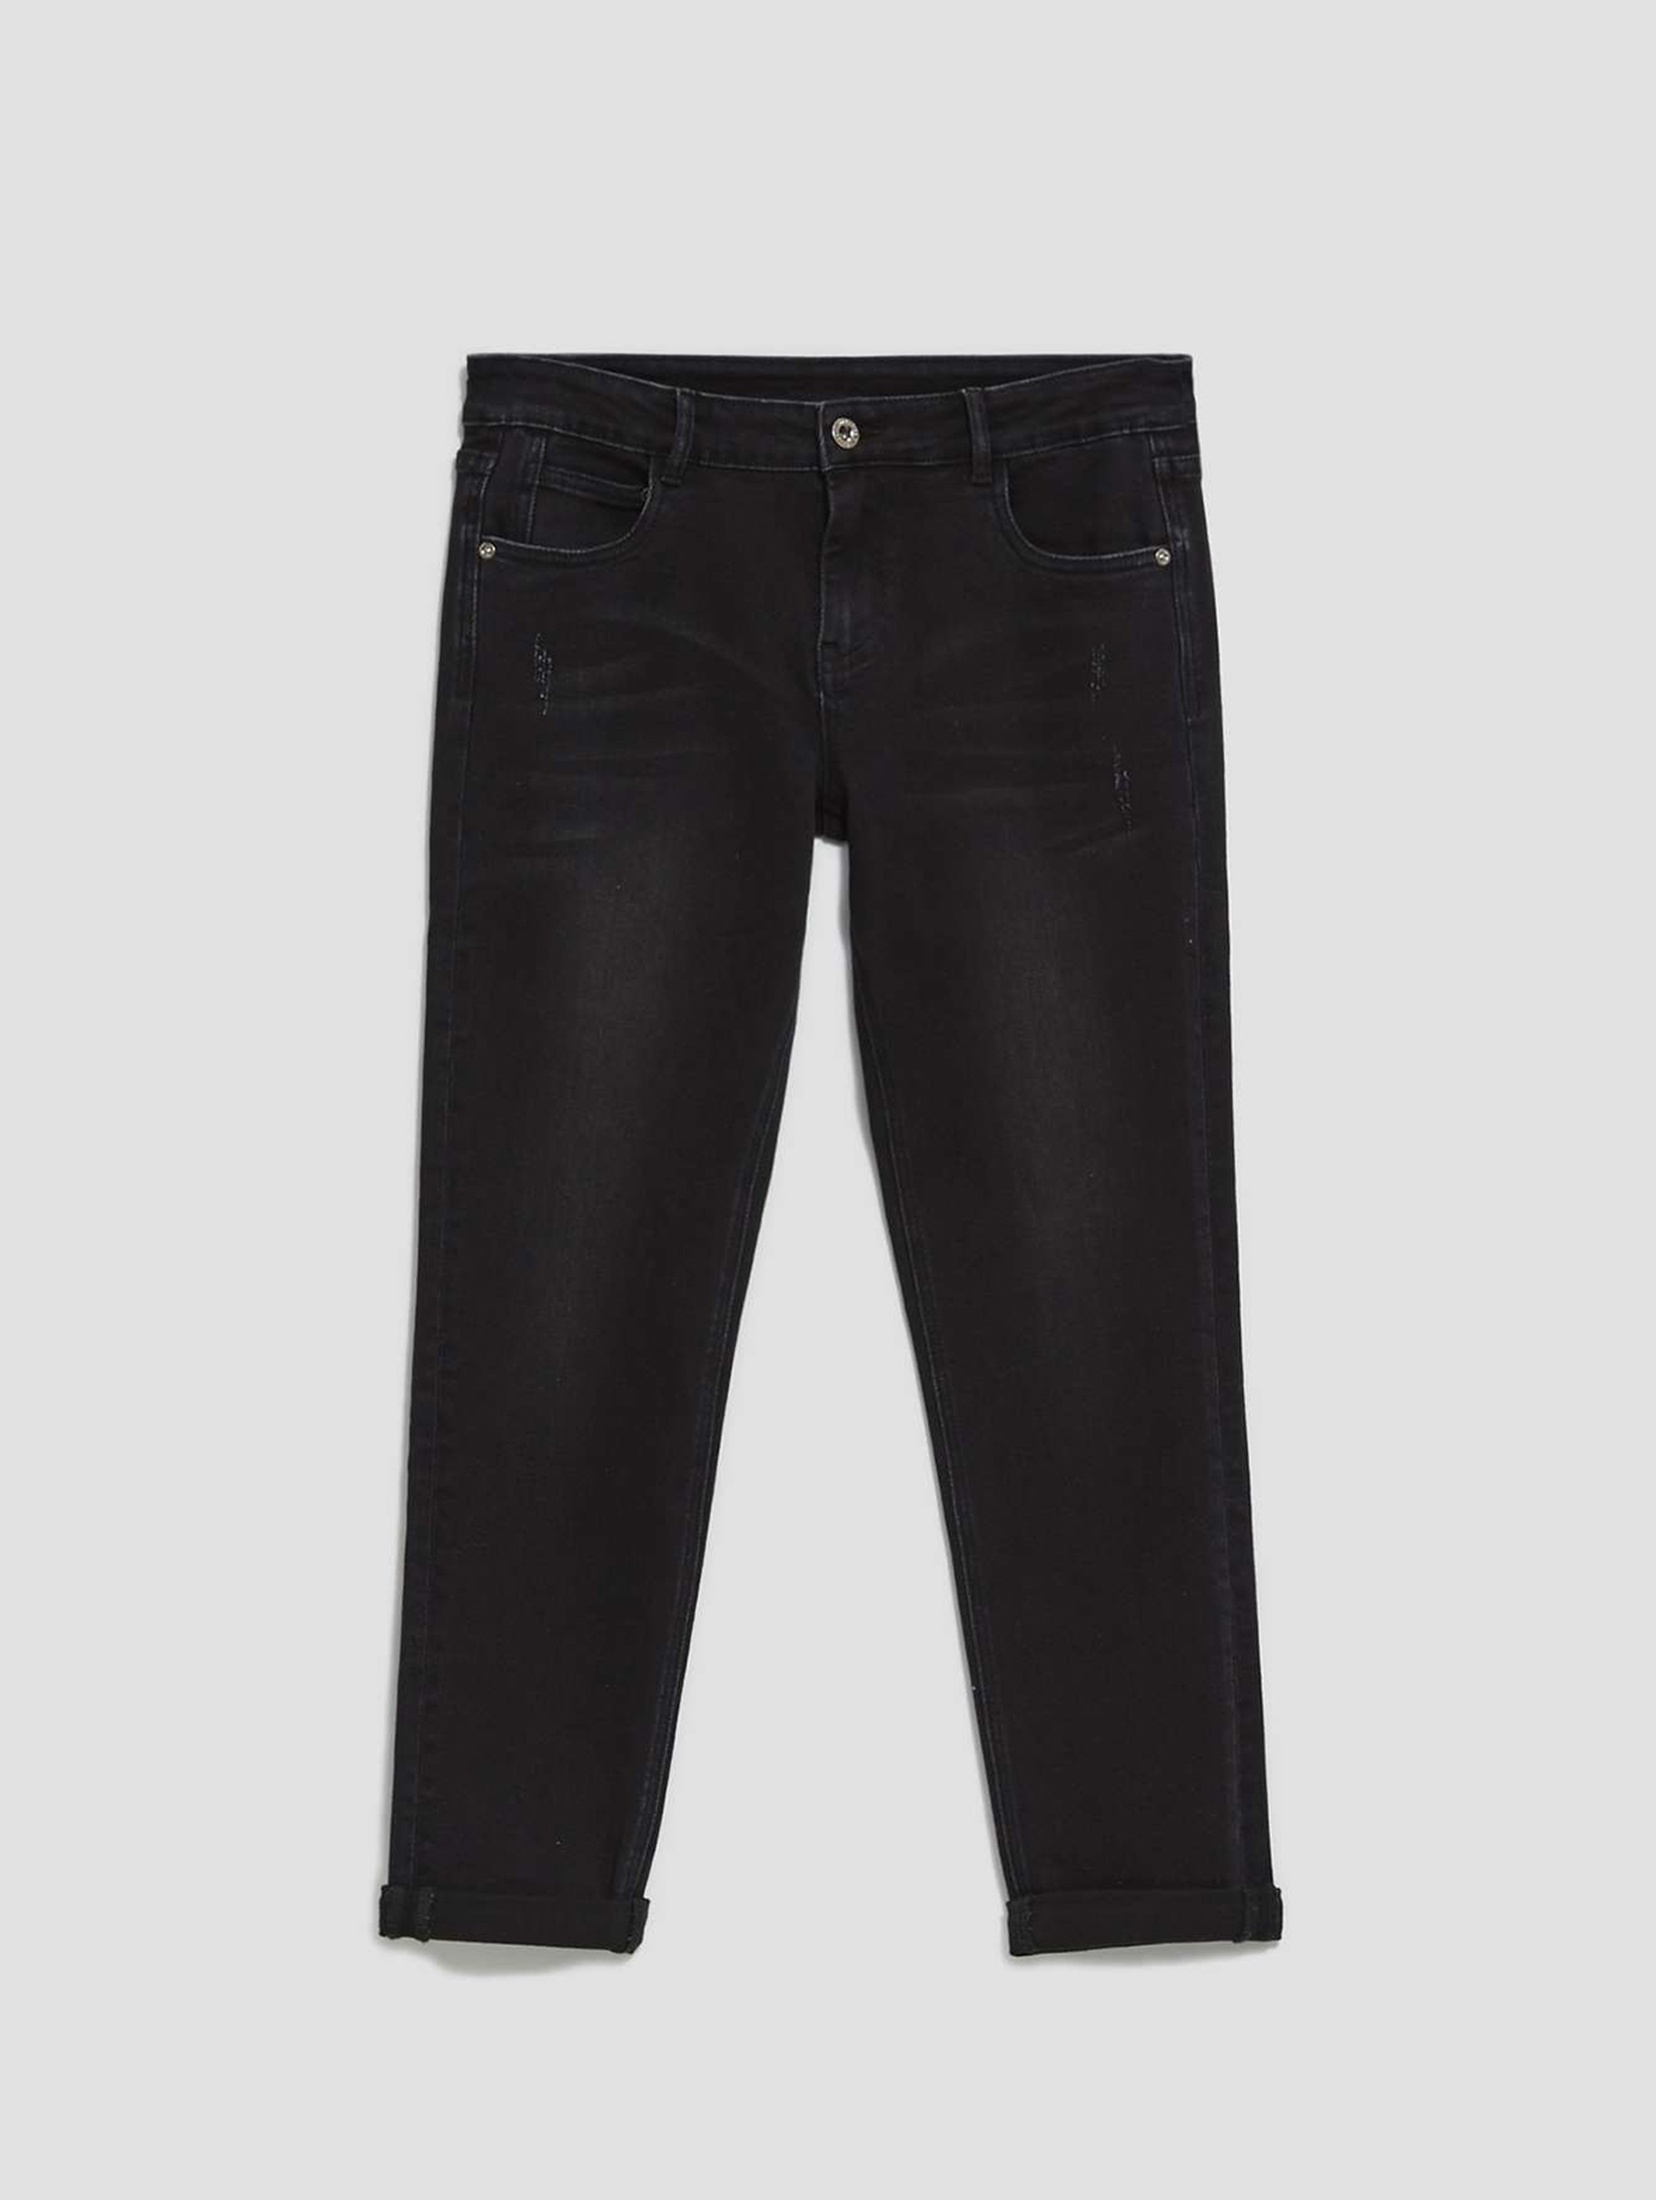 Czarne spodnie damskie jeansowe z prosta nogawką